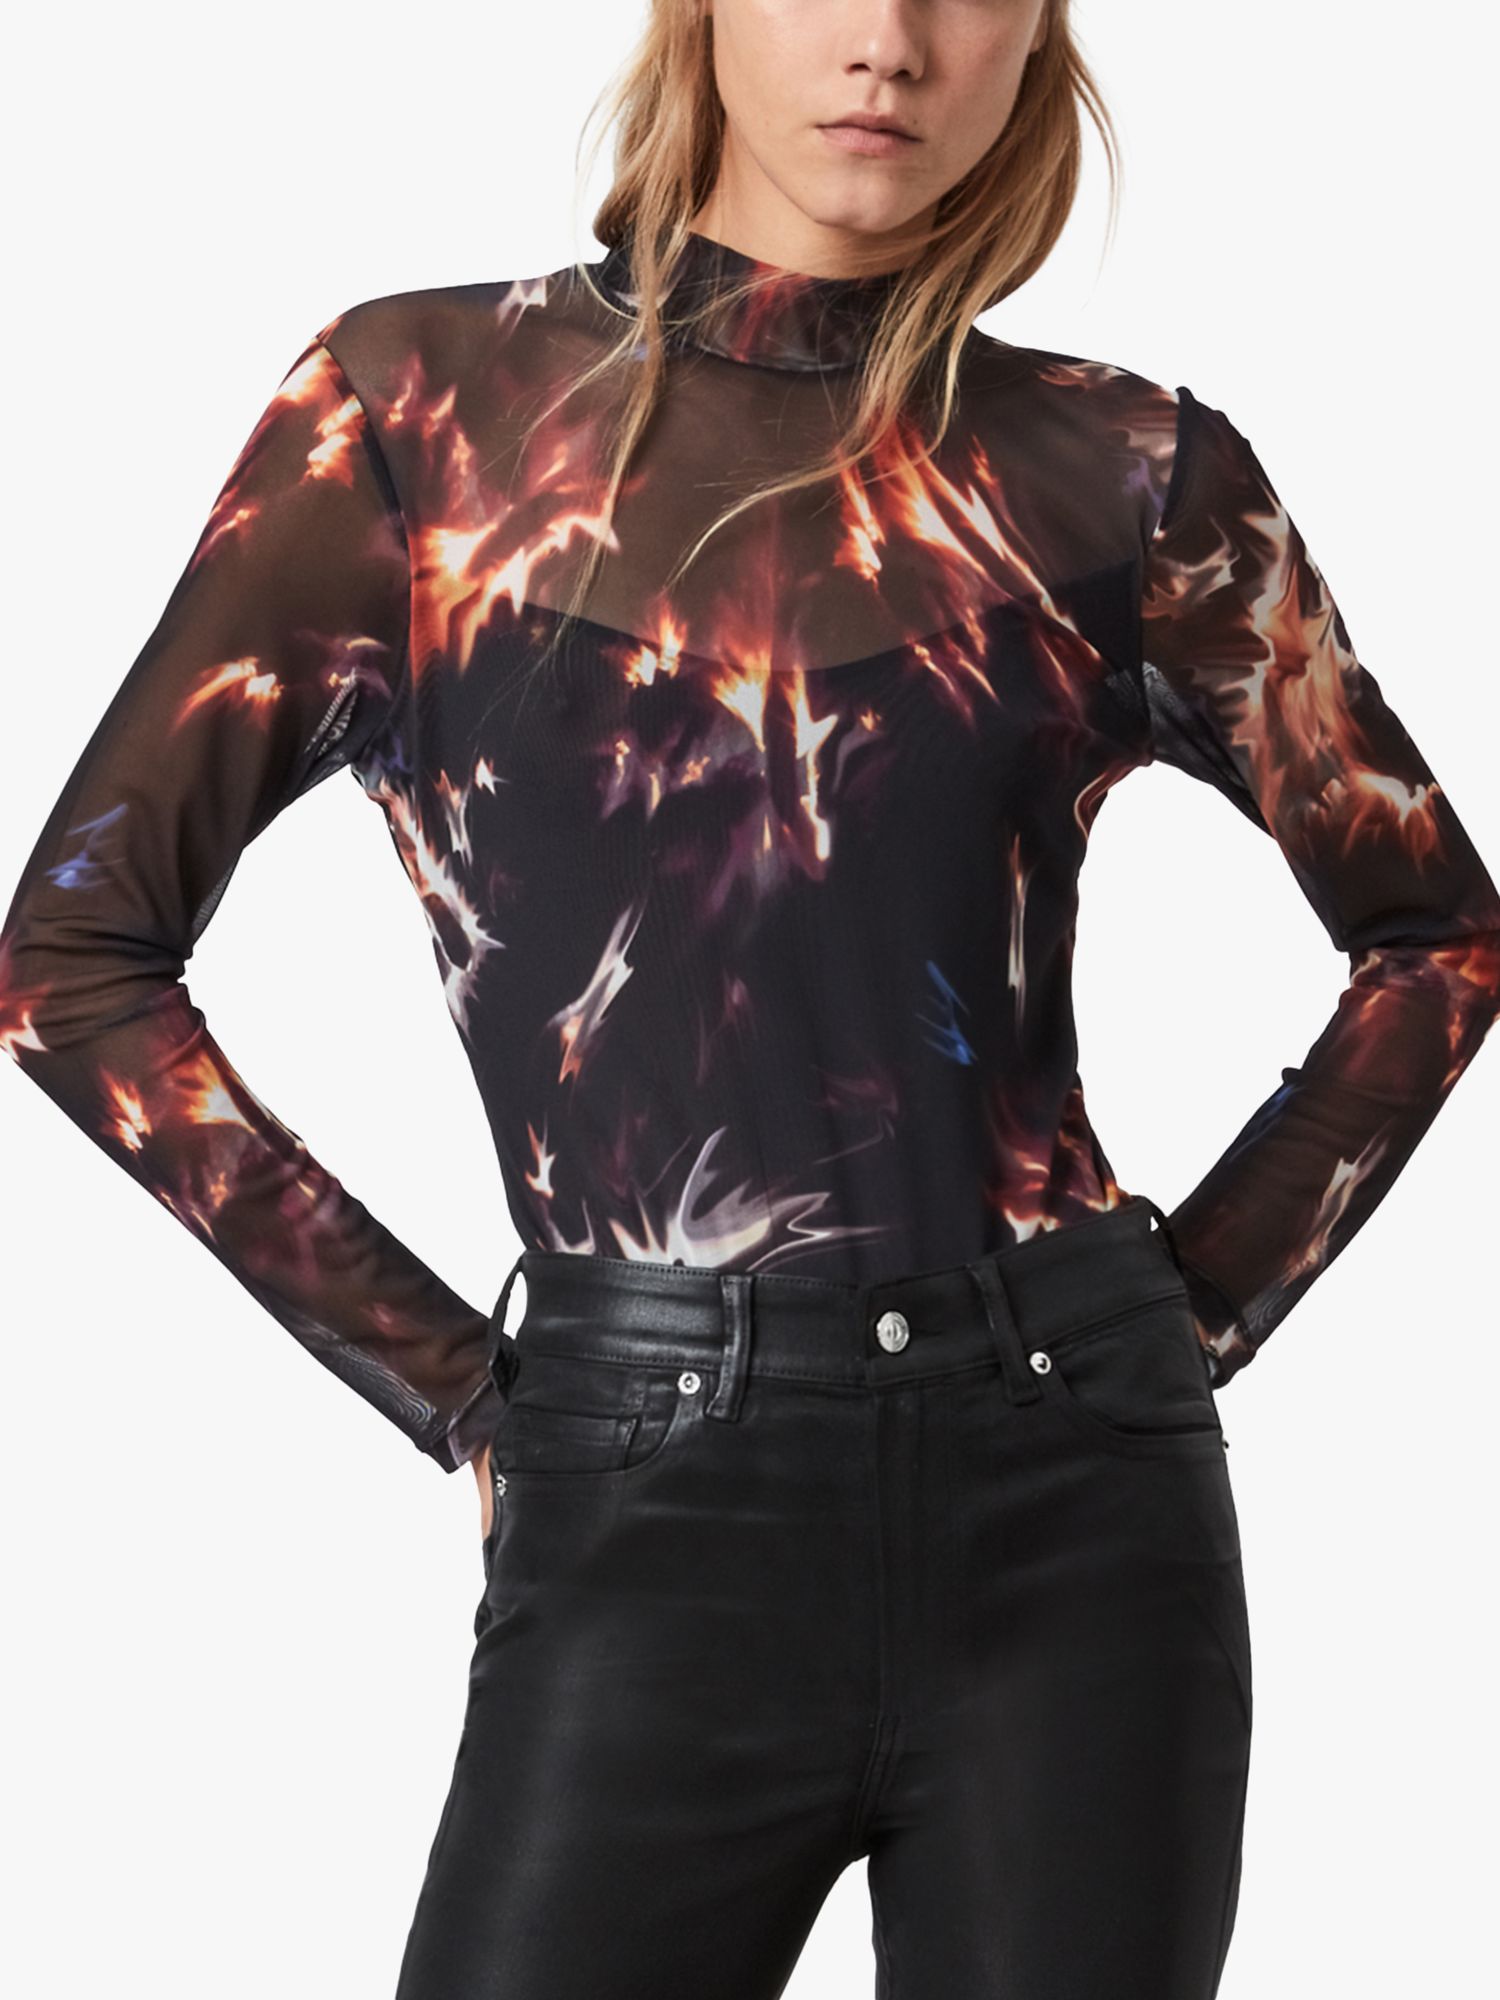 AllSaints Flames Graphic Print Bodysuit, Black/Red